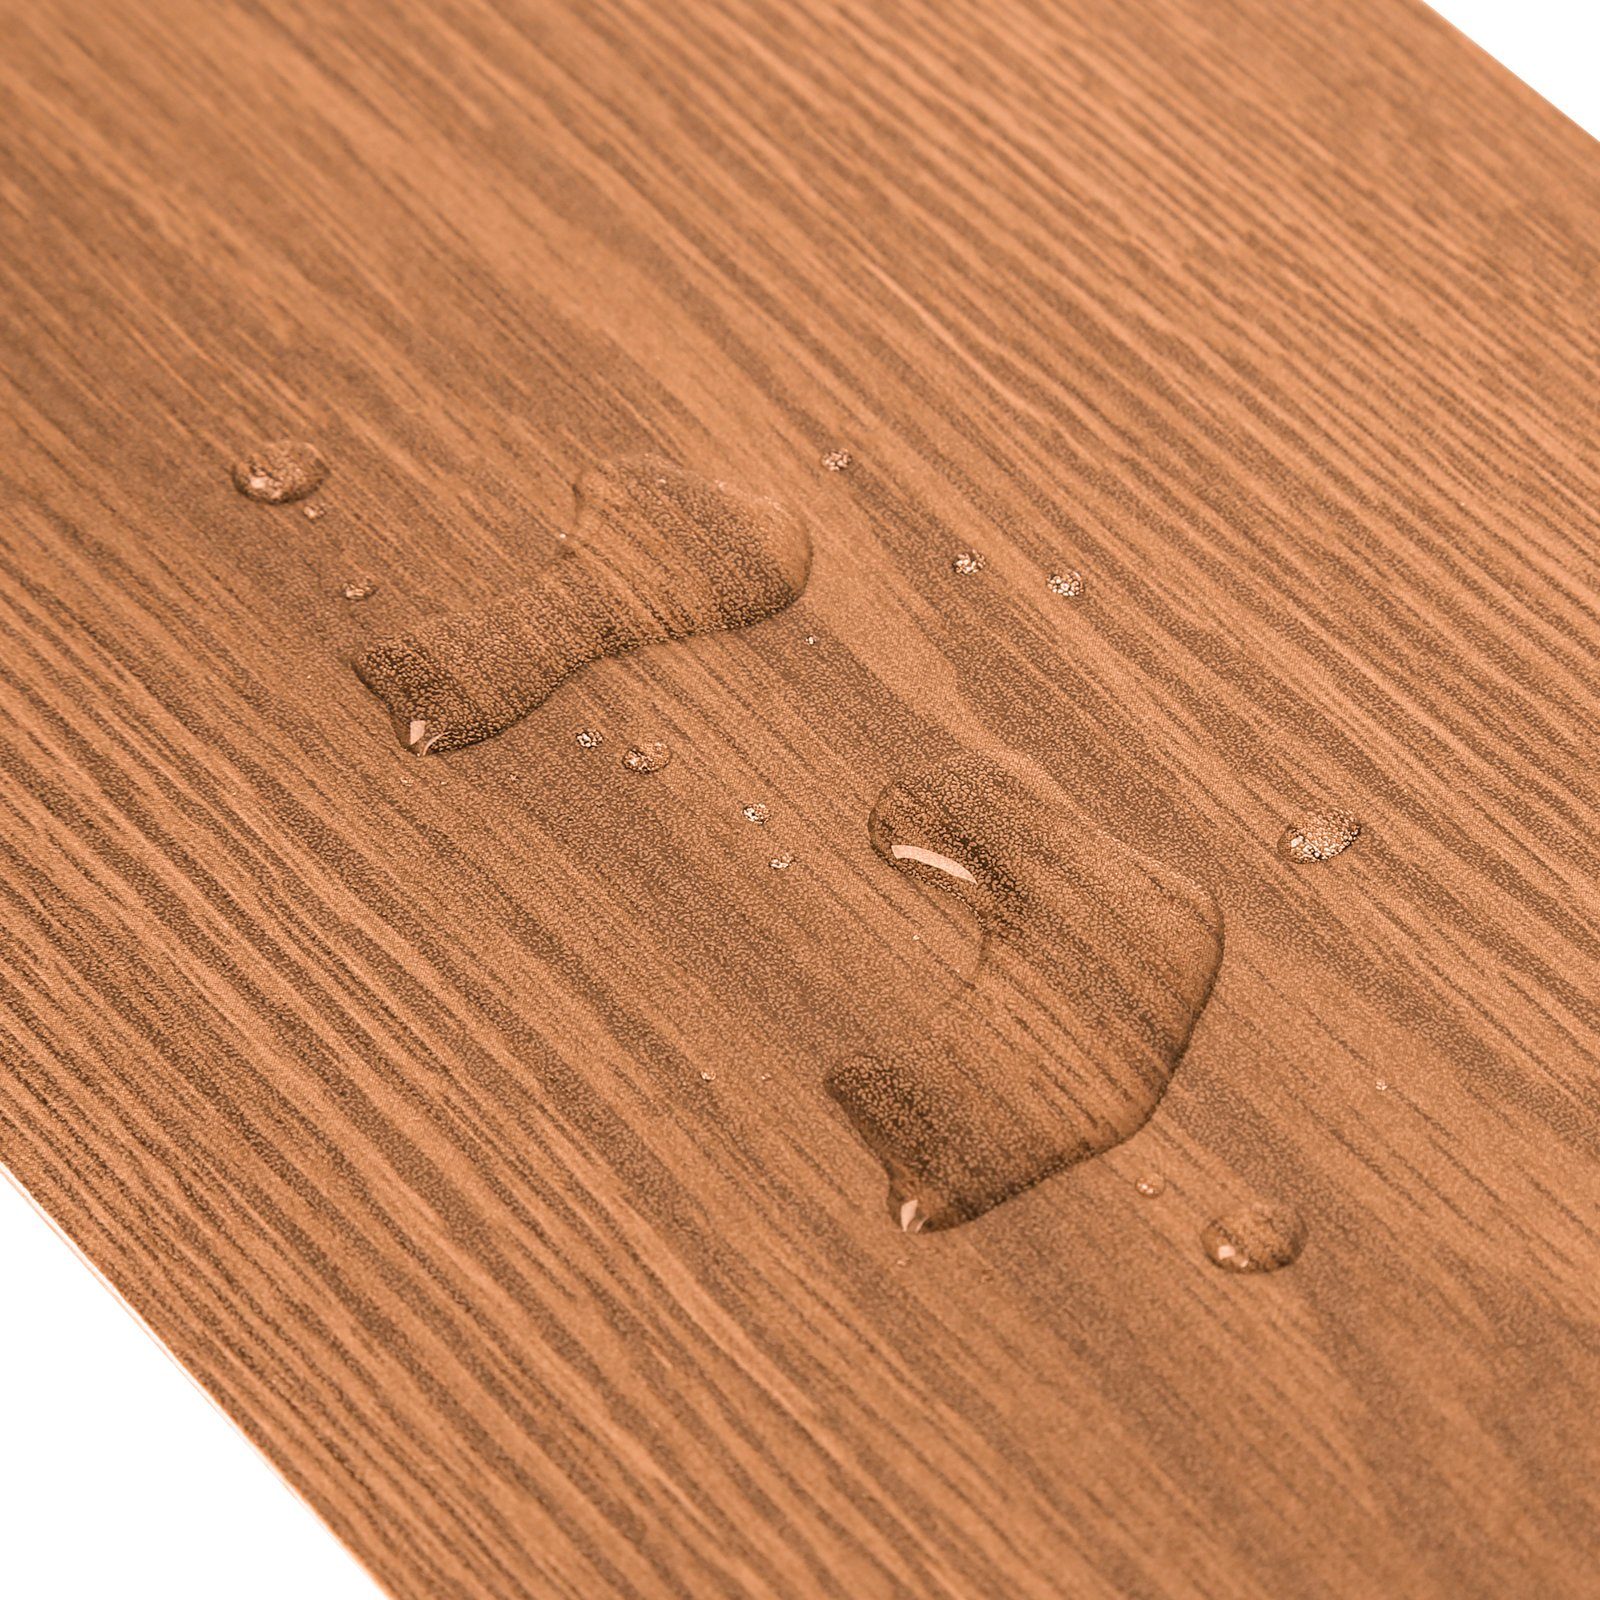 TolleTour Vinylboden Vinylboden - Oak 10 Warm m² ca.1 m²,selbstklebend,Oak, Planke selbstklebend PVC Classic